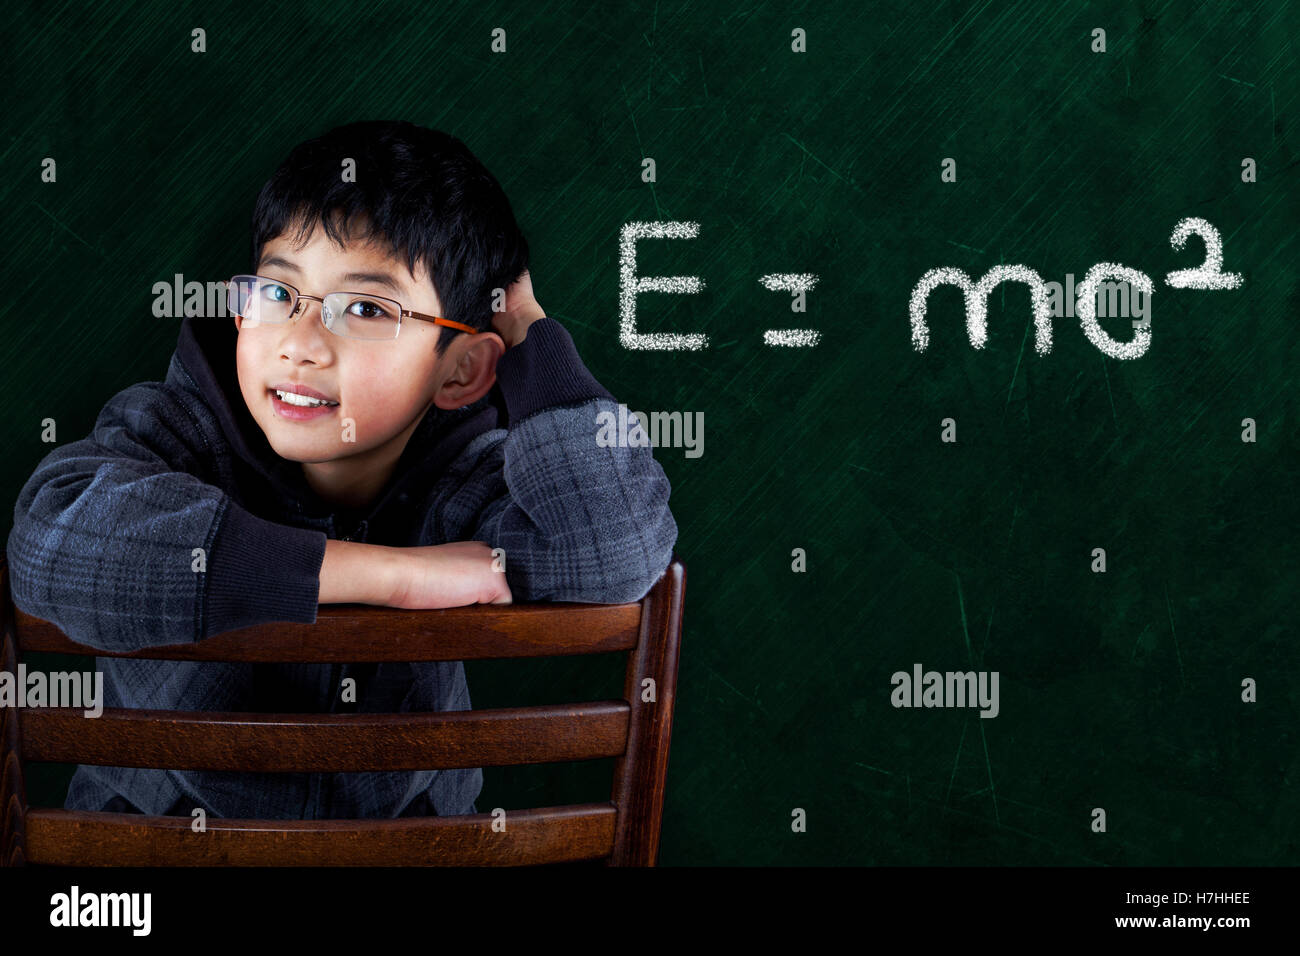 Smart-Asian Boy auf Klassenzimmer Stuhl sitzend mit mathematische Gleichung auf Tafel Hintergrund und Raum zu kopieren. Stockfoto